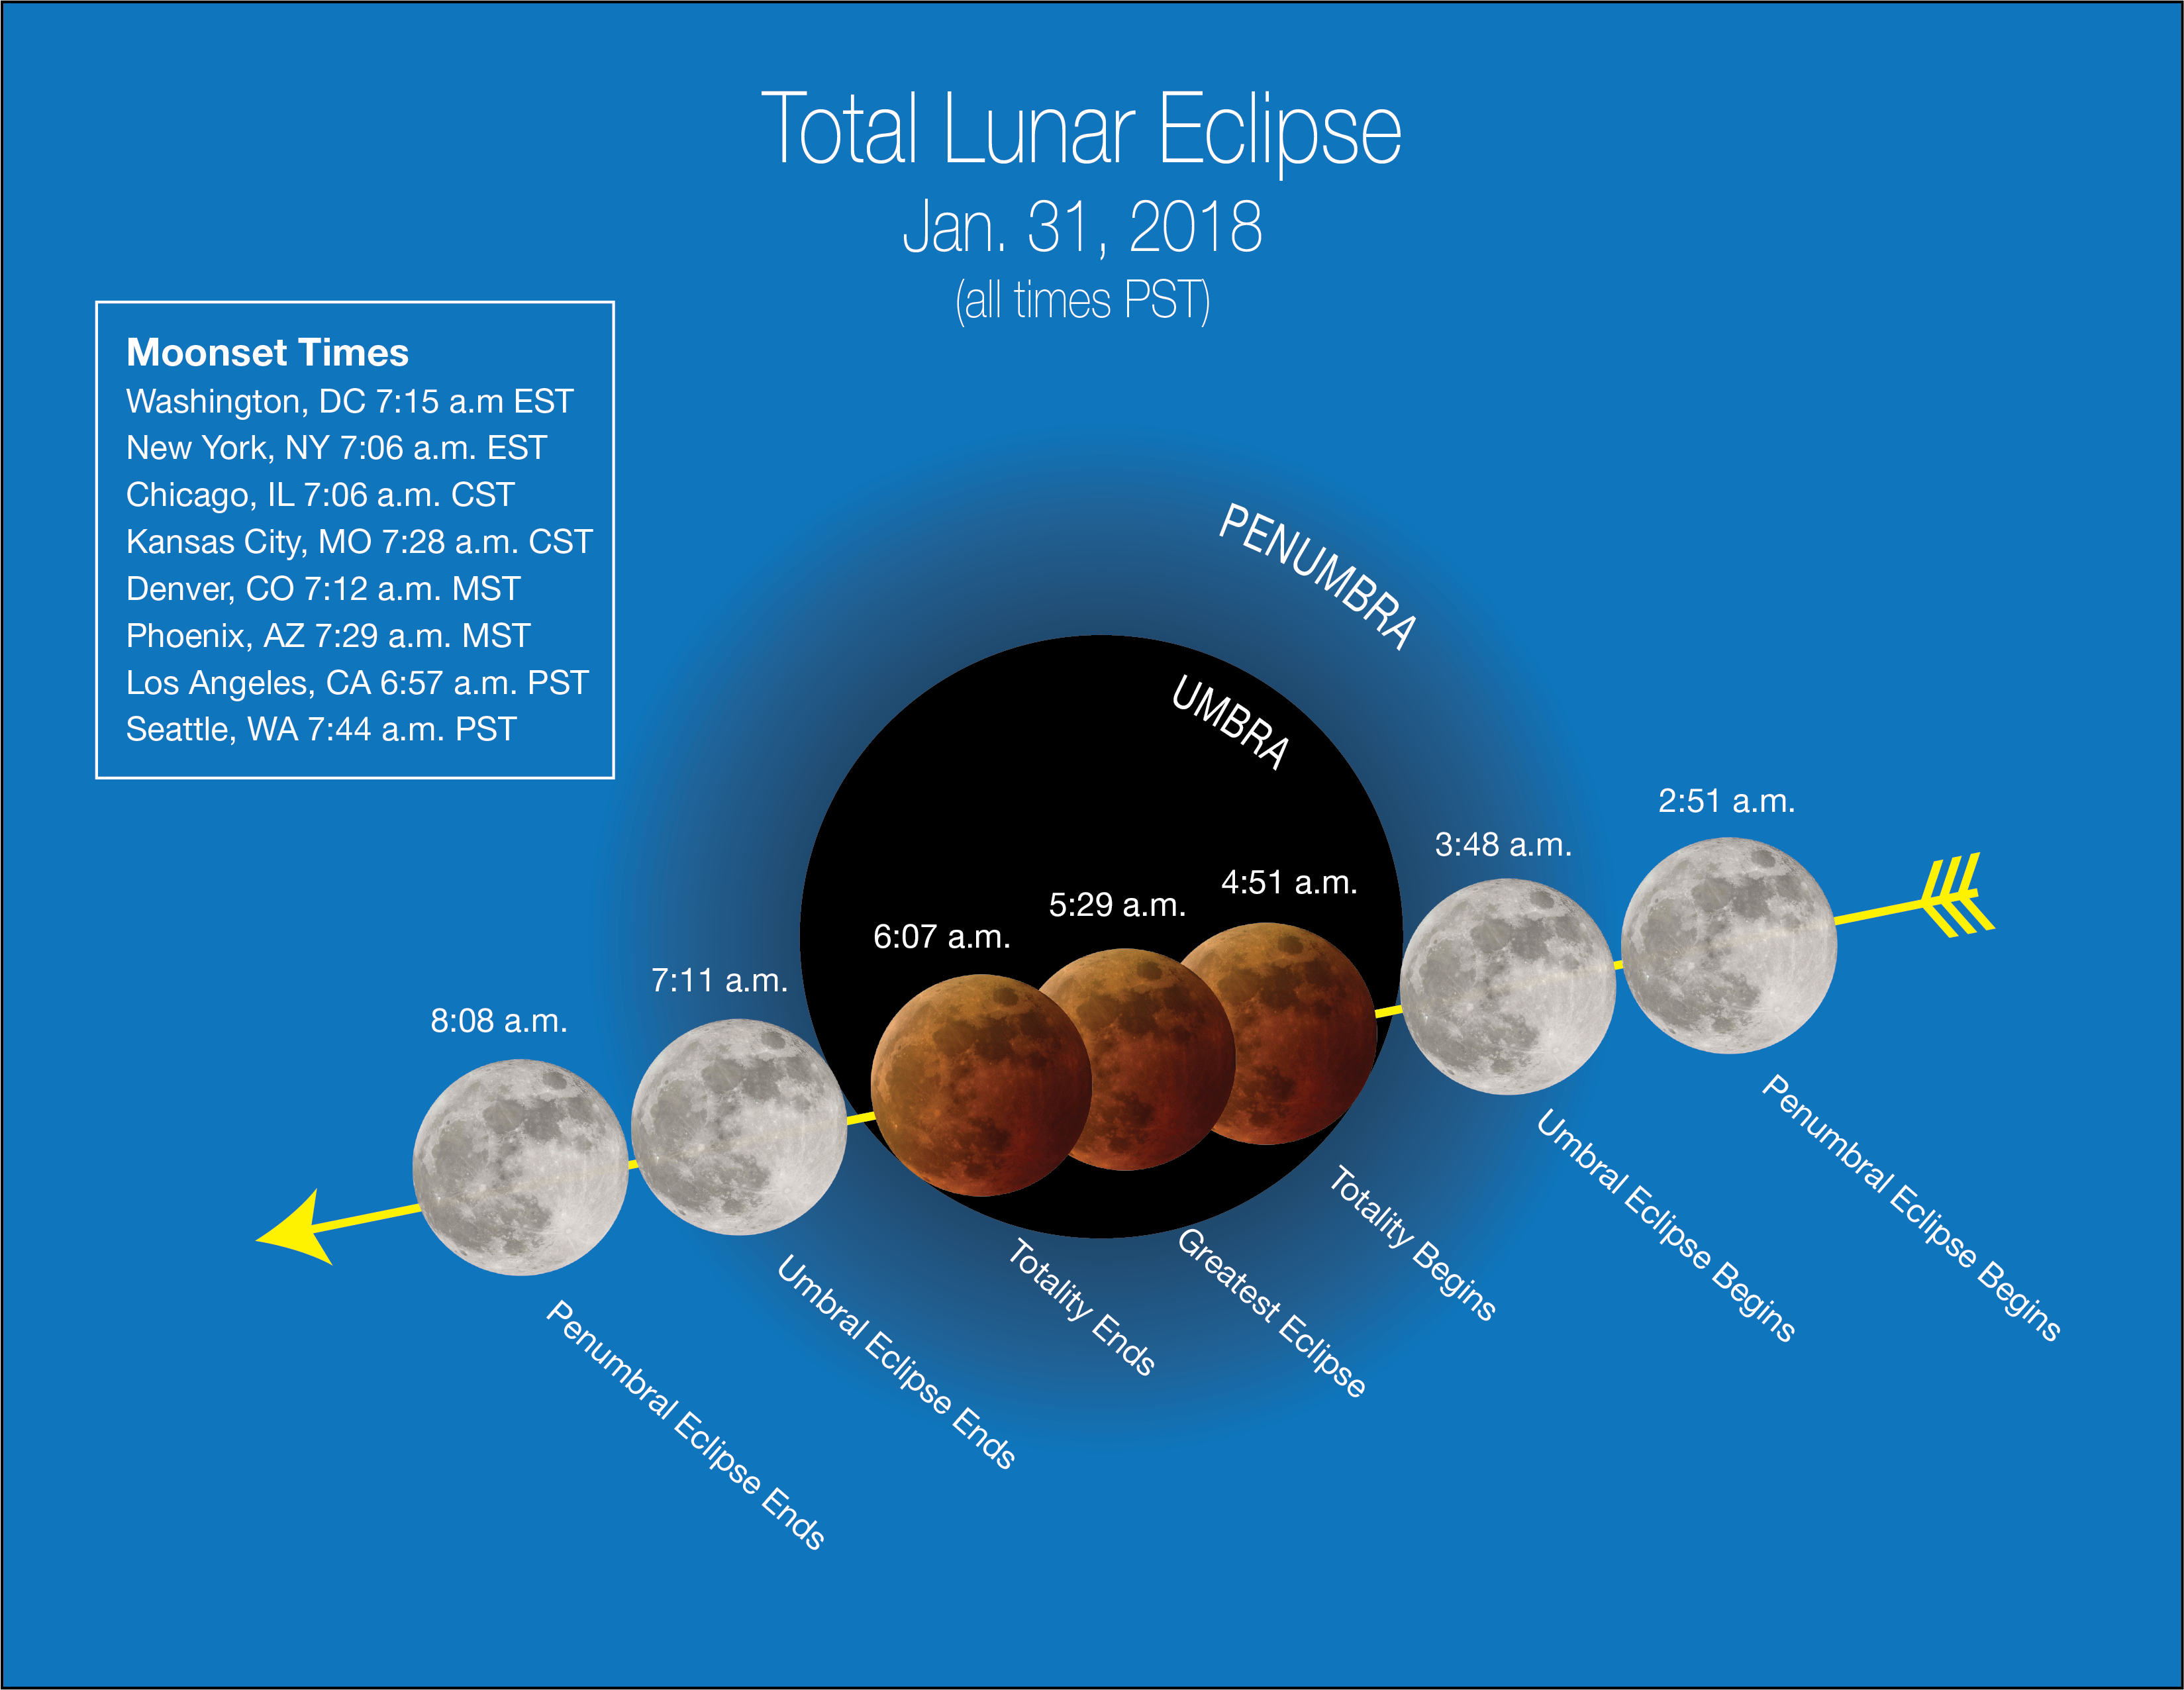 Trayectoria lunar durante el eclipse. Fuente: NASA